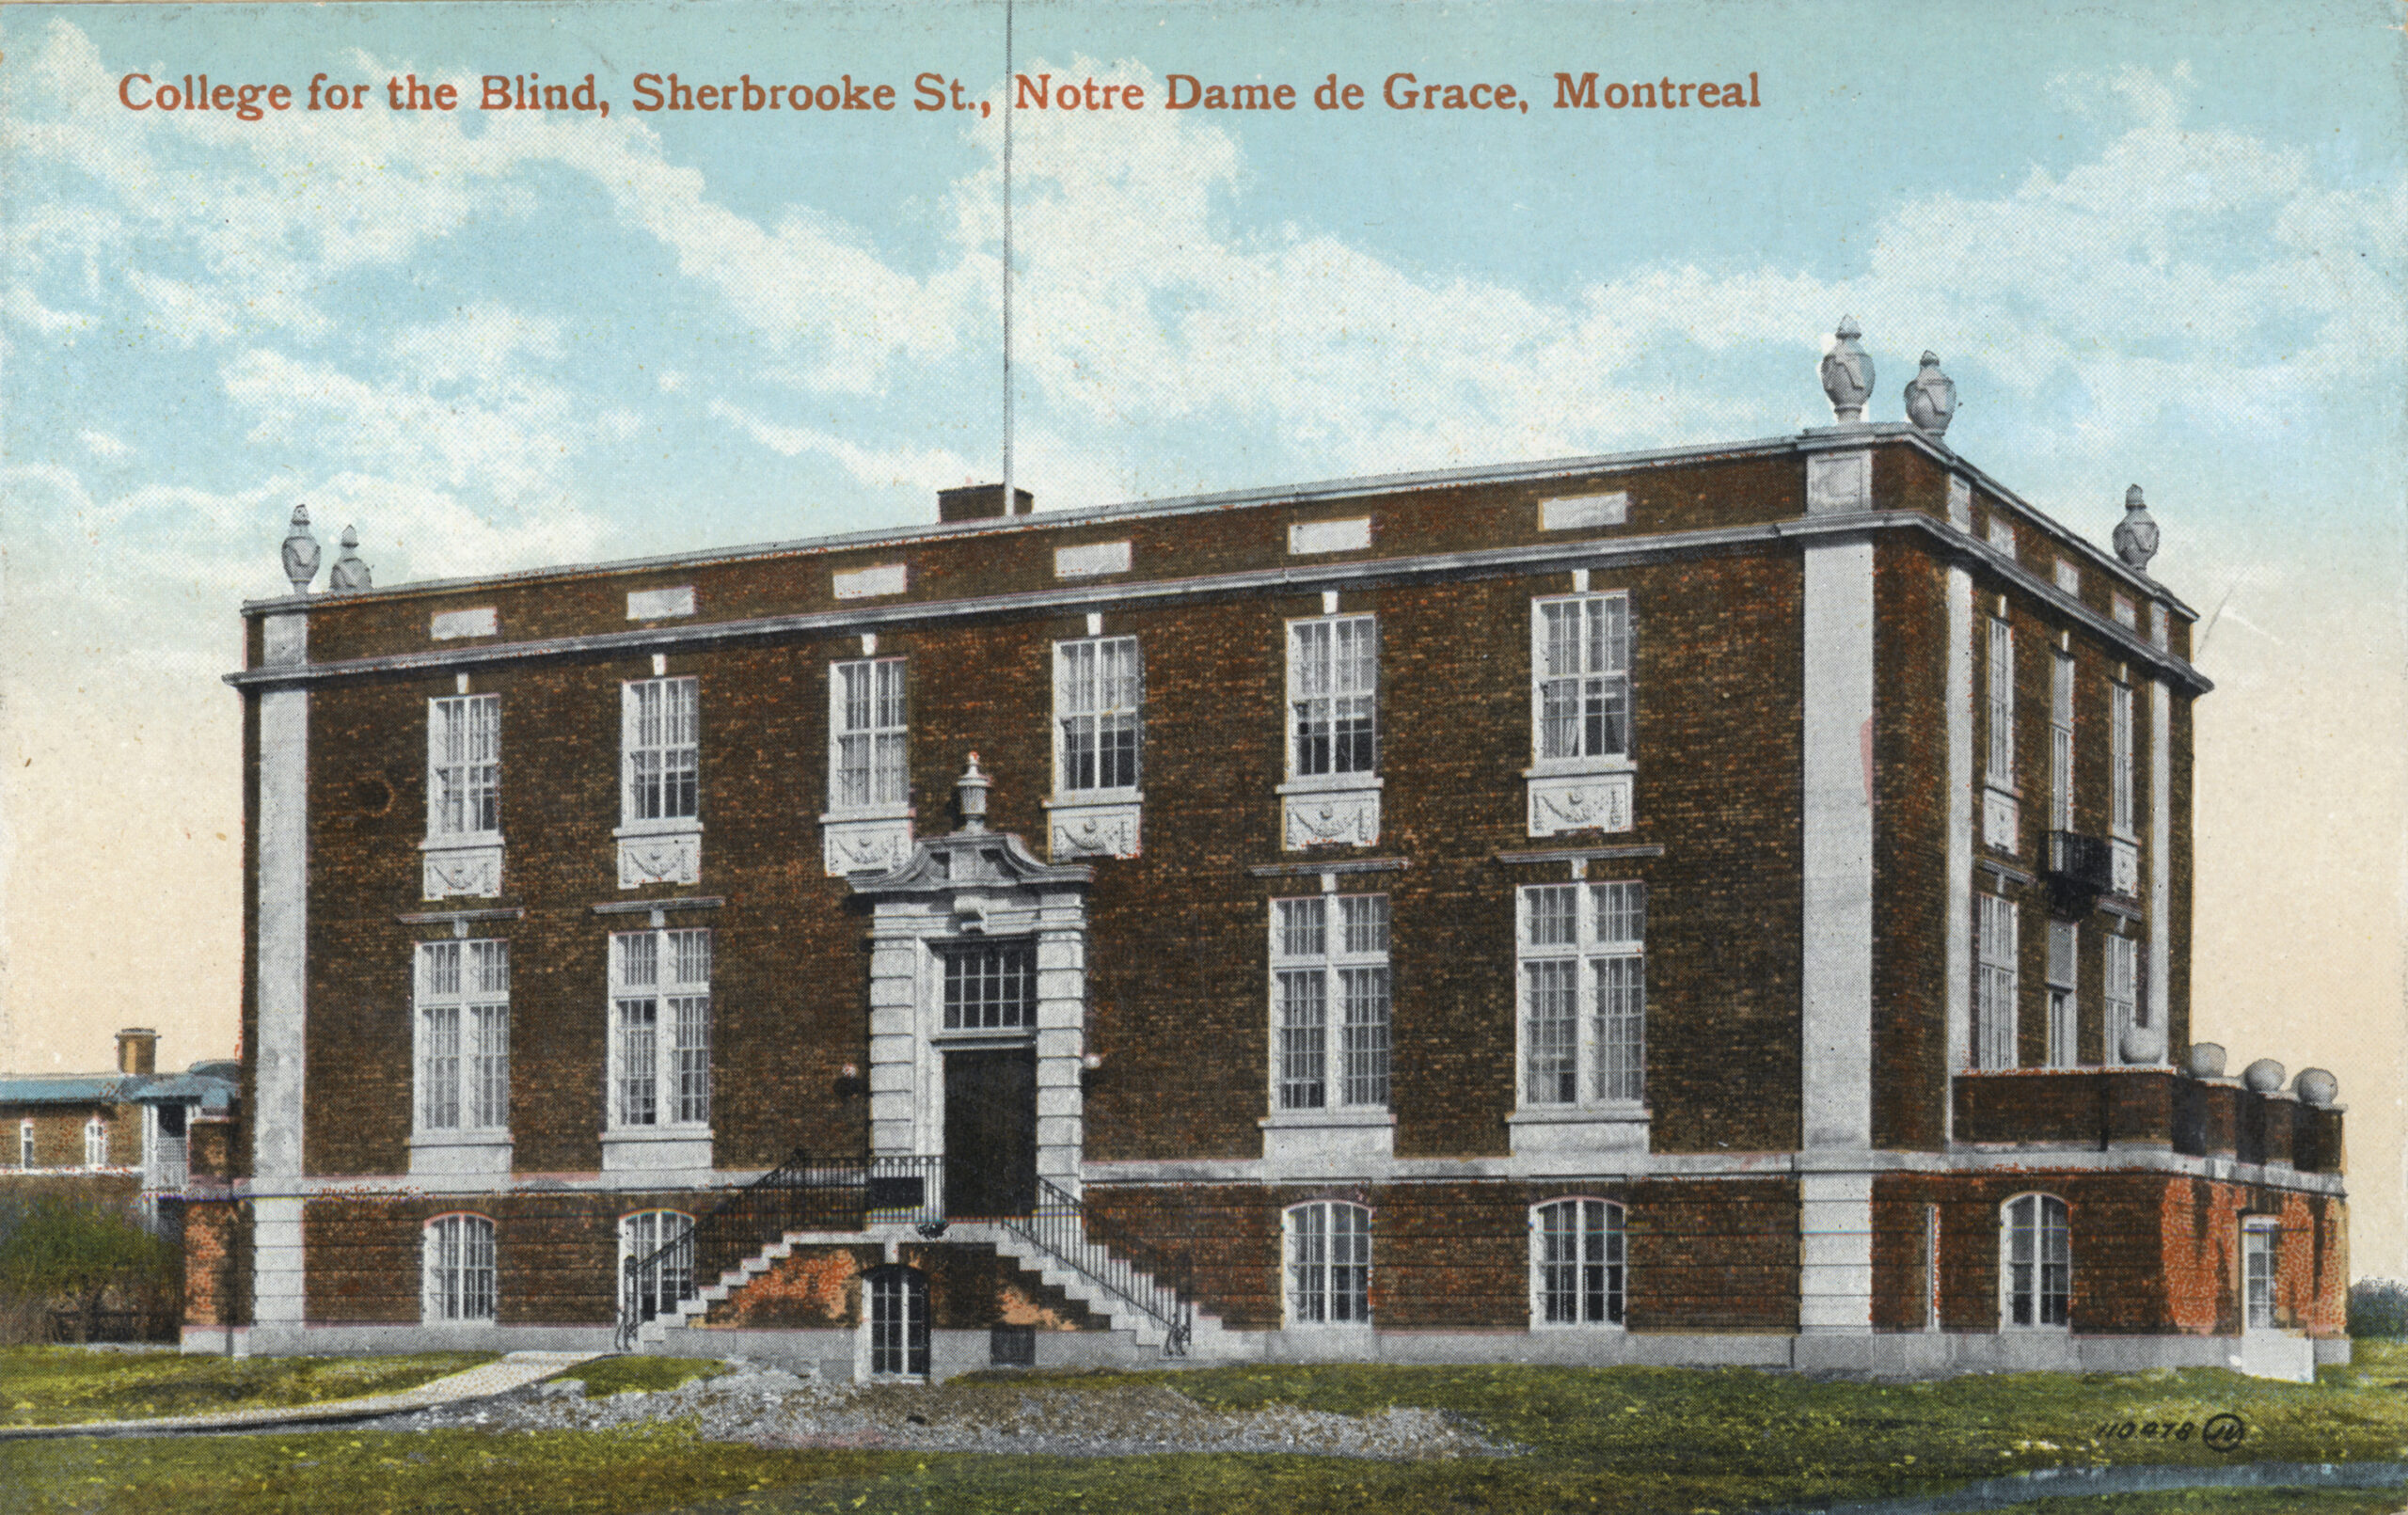 Collège pour les aveugles, rue Sherbrooke, Notre-Dame-de-Grâce, Montréal, MP-0000.876.2, McCord. QC, vers 1910, The Valentine & Sons' Publishing Company, Limited ,